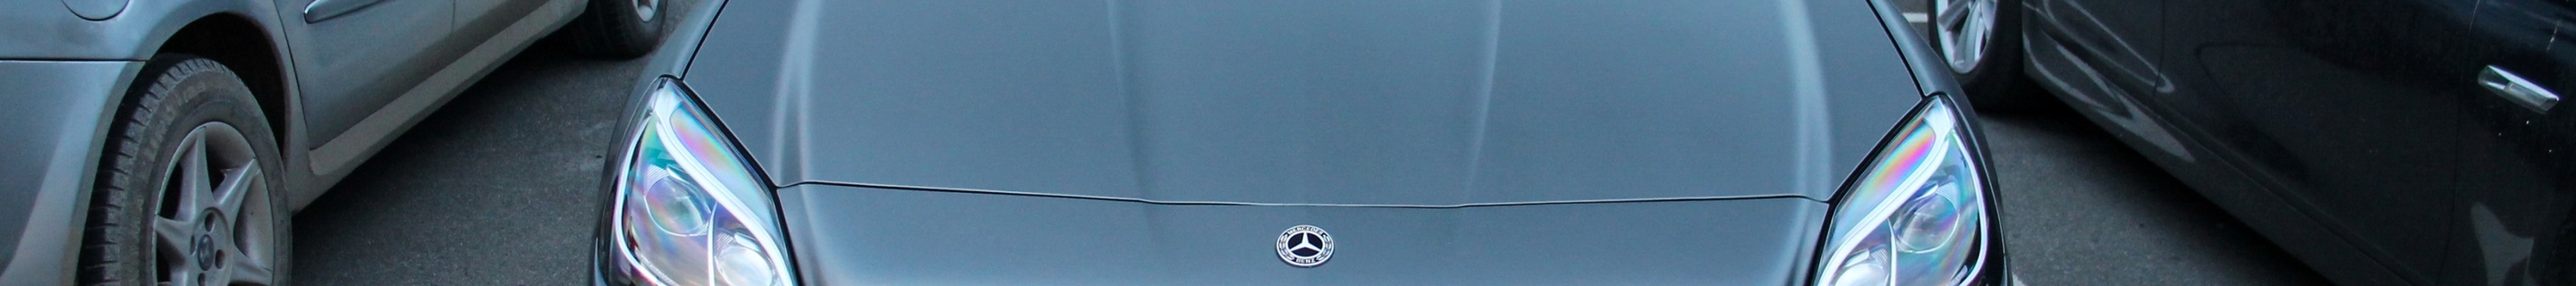 Mercedes-AMG SLC 43 R172 RedArt Edition